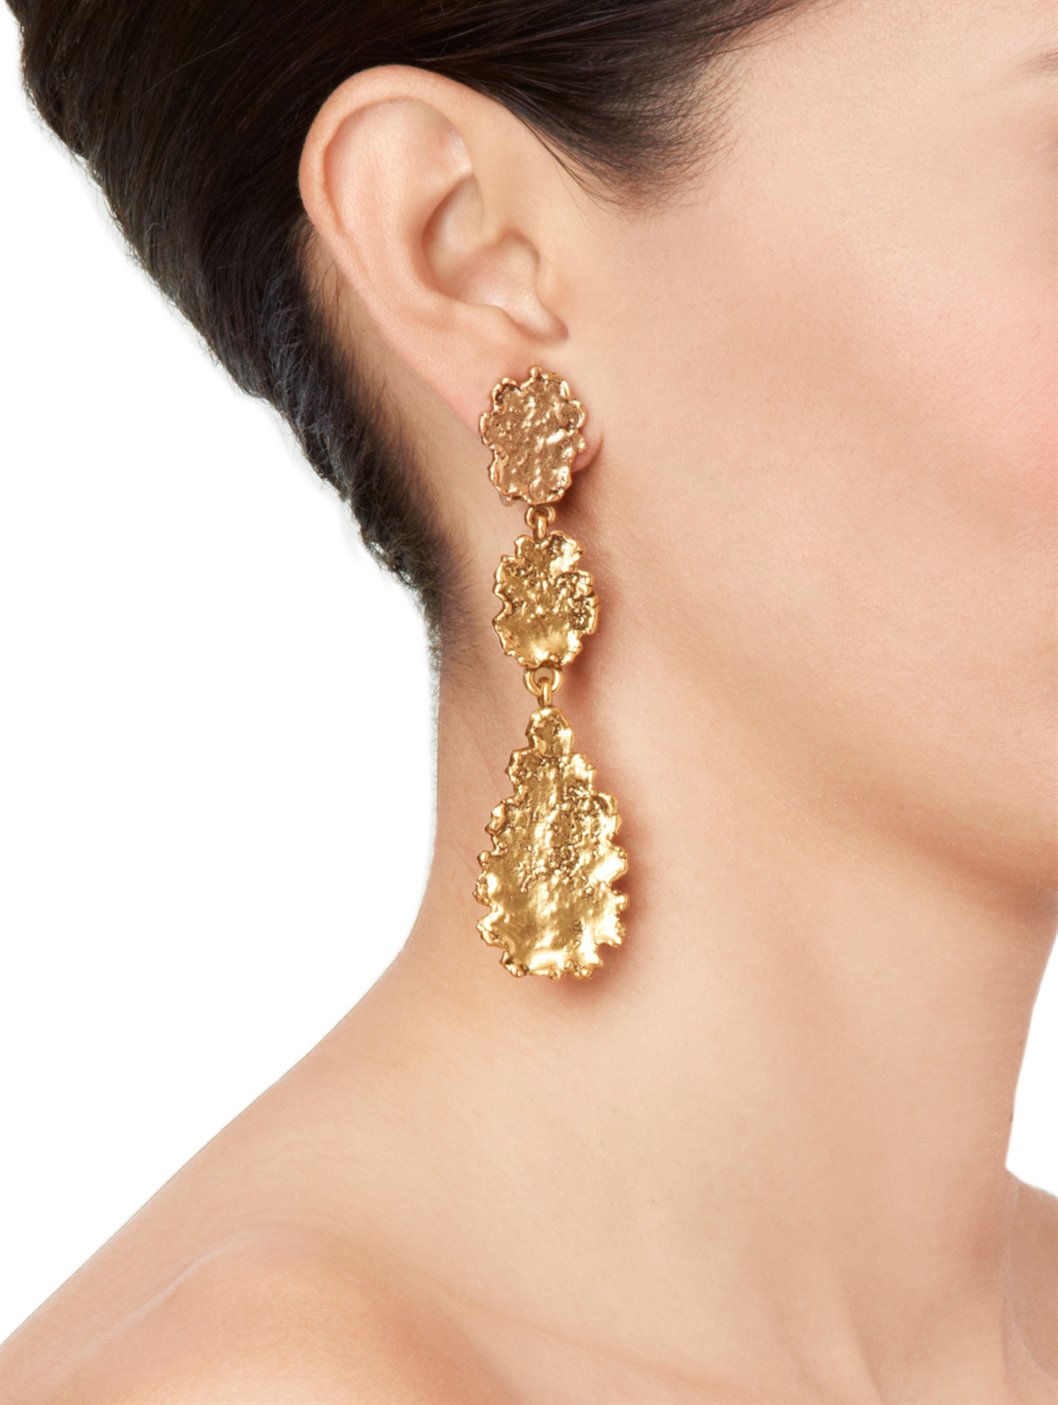 Lyst - Oscar de la renta Goldplated Crystal Earrings in Metallic